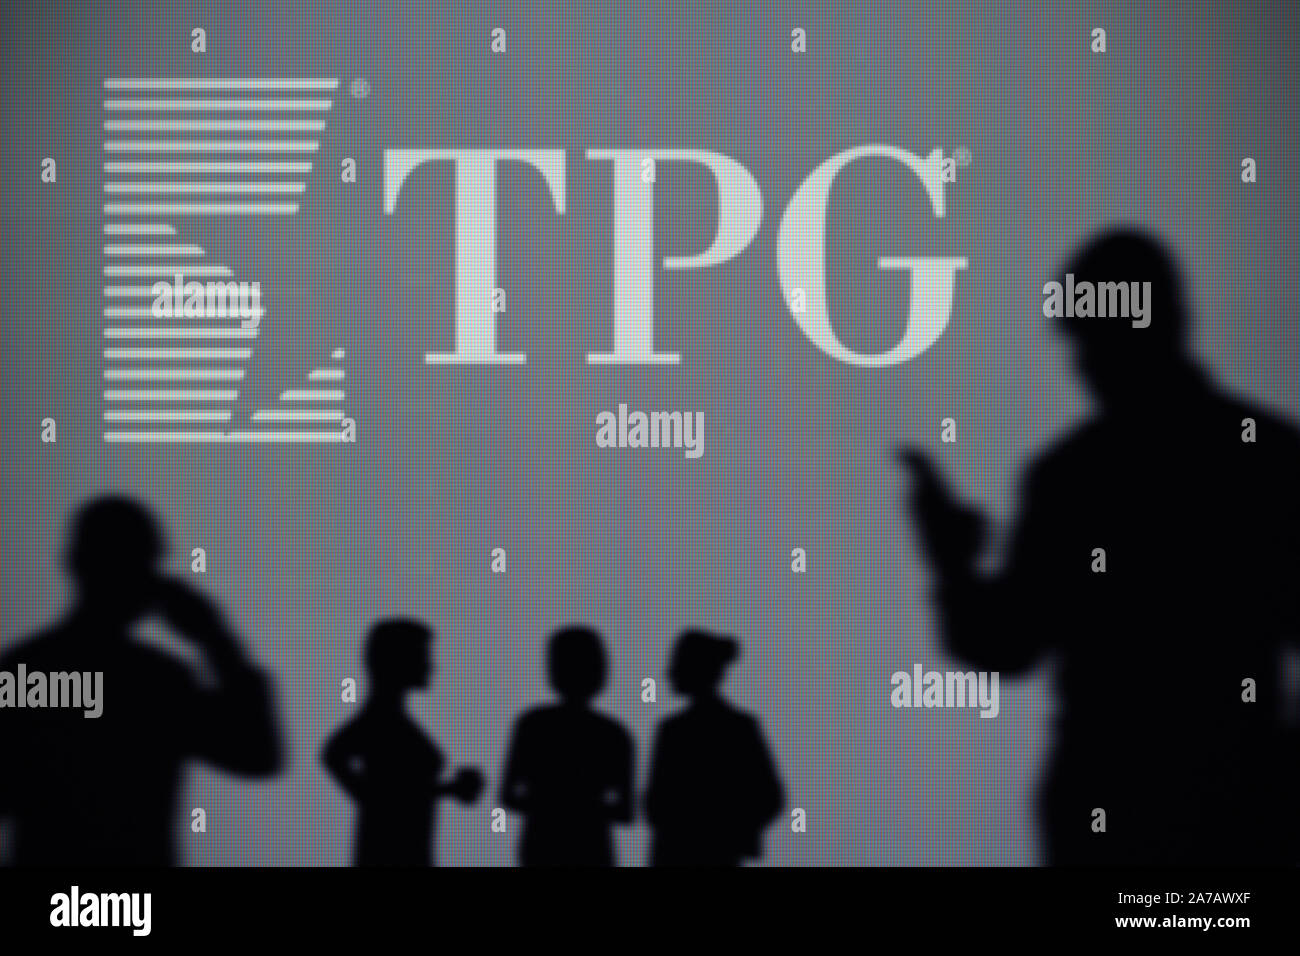 Das TPG Capital Logo ist auf einen LED-Bildschirm im Hintergrund, während eine Silhouette Person ein Smartphone verwendet (nur redaktionelle Nutzung) Stockfoto